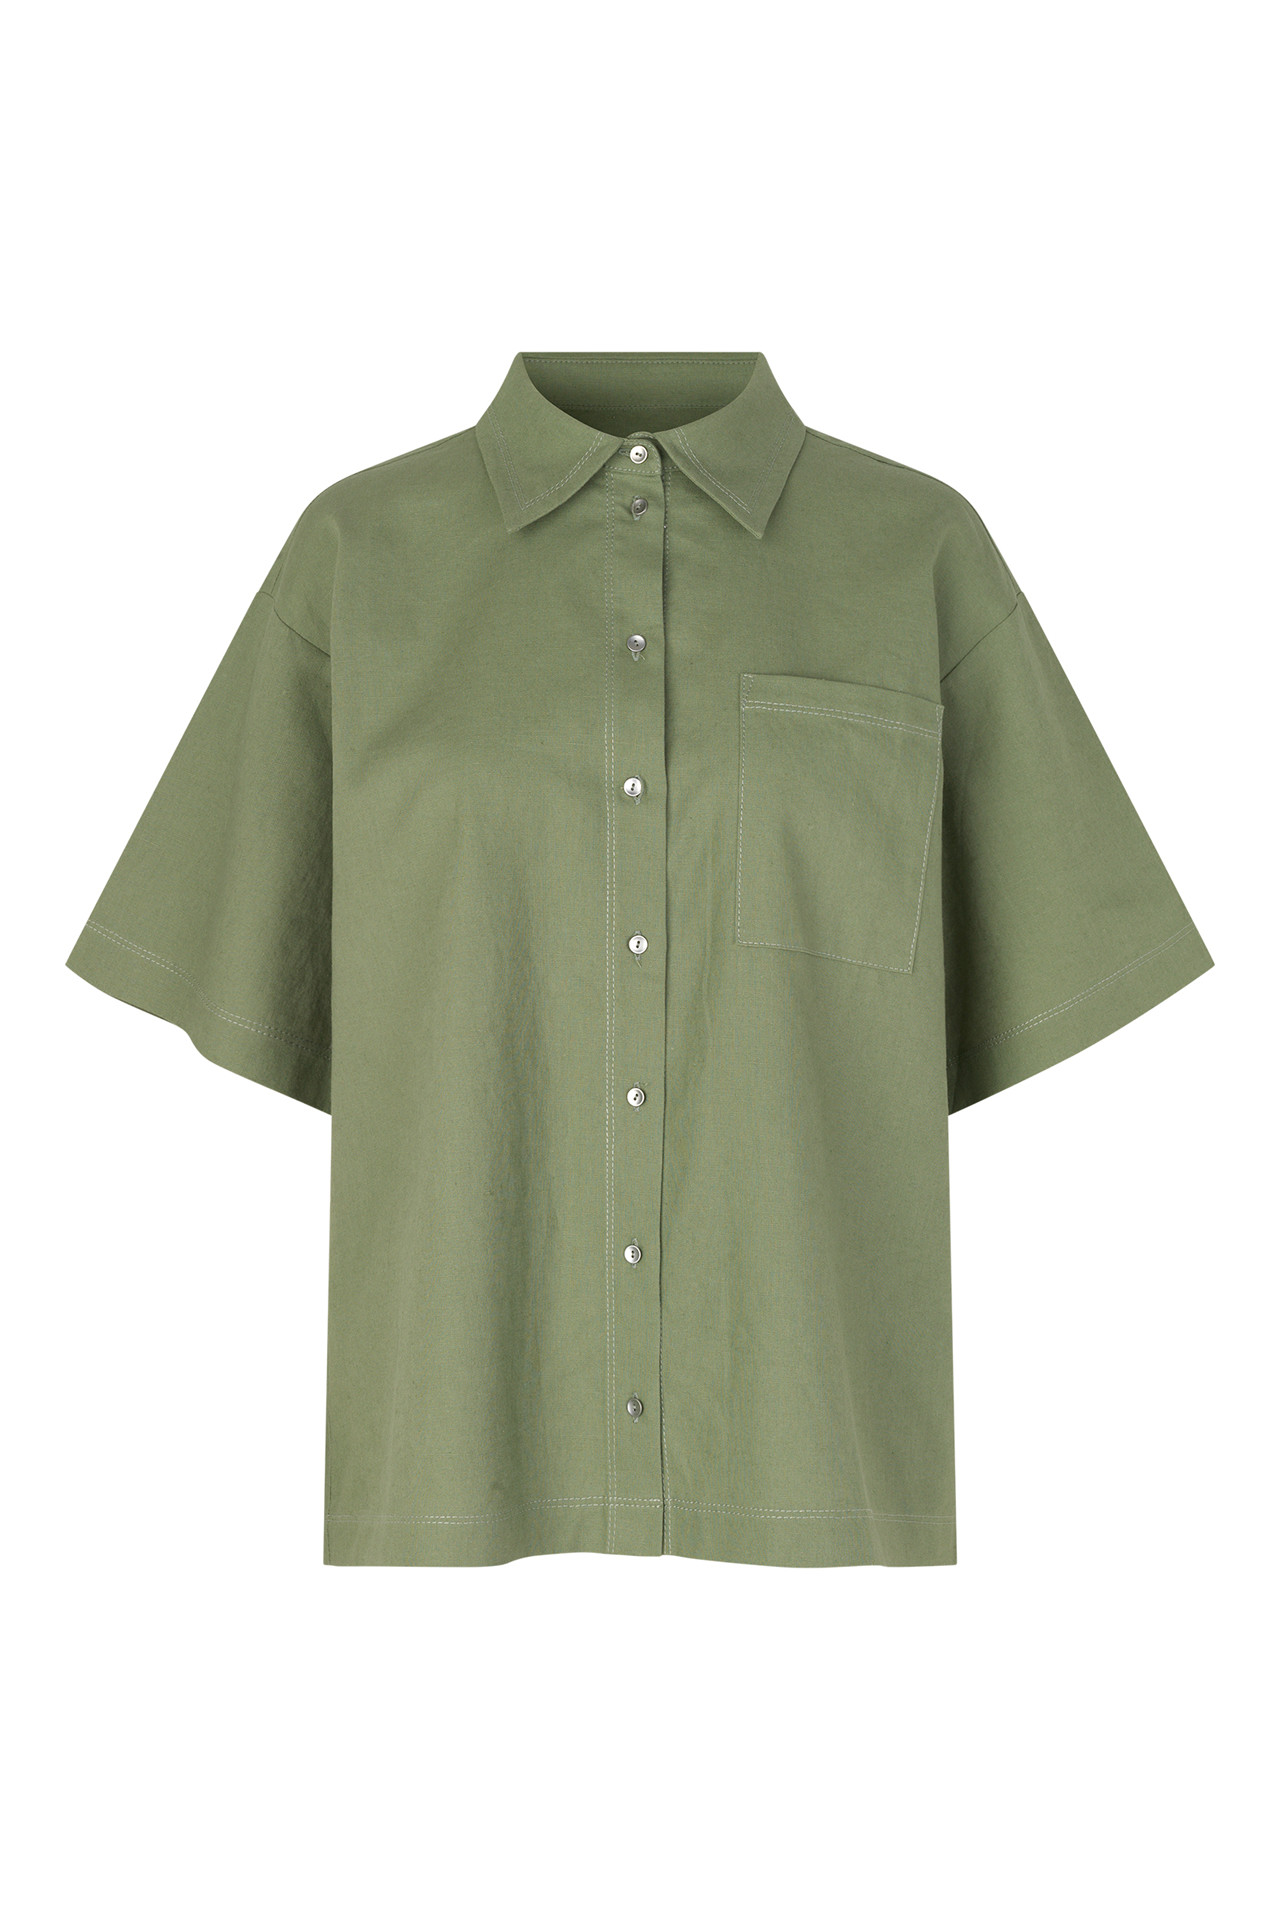 TWO GENERATIONS Malibu skjorte (OLIVE GREEN L)